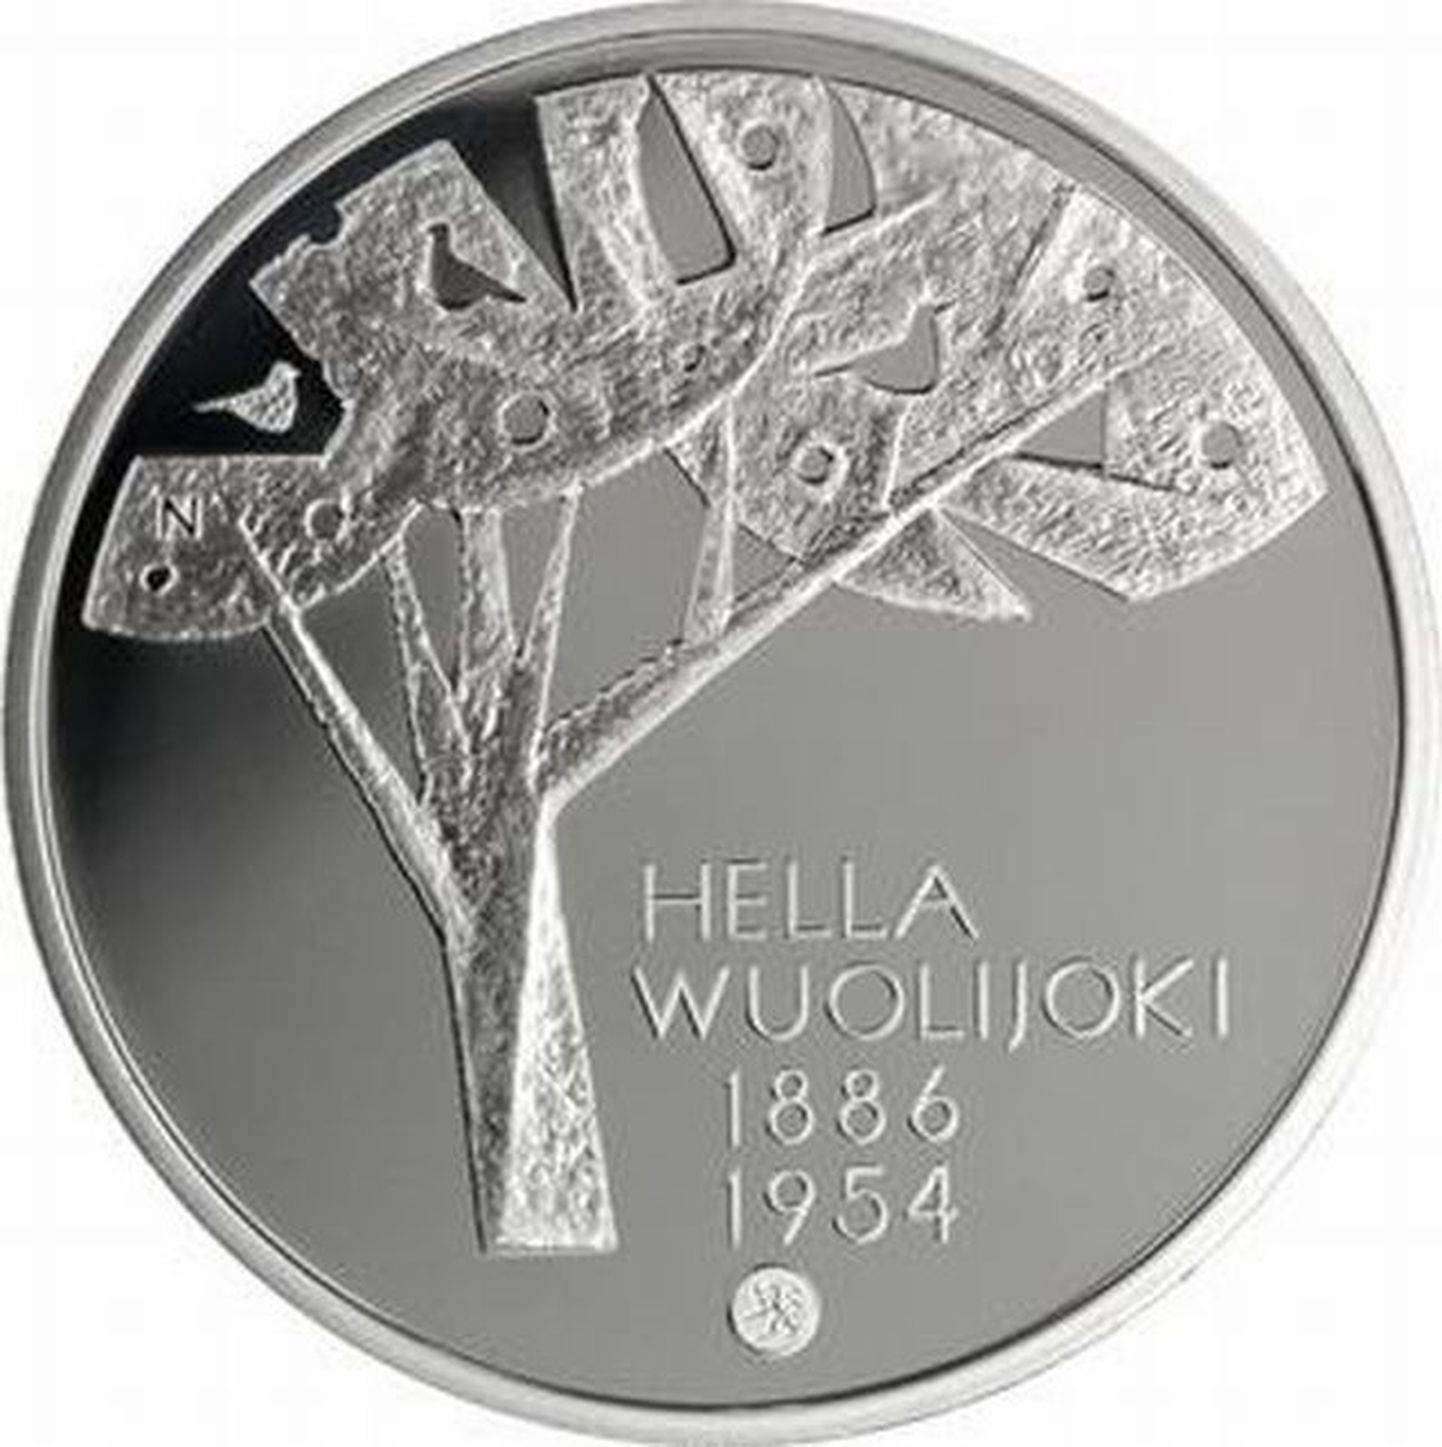 Eesti päritolu soome kirjaniku ja poliitiku Hella Wuolijoki sünniaastapäevaks märtsis 2011 välja antud juubelimünt, mis valmis Soome Rahapajas.